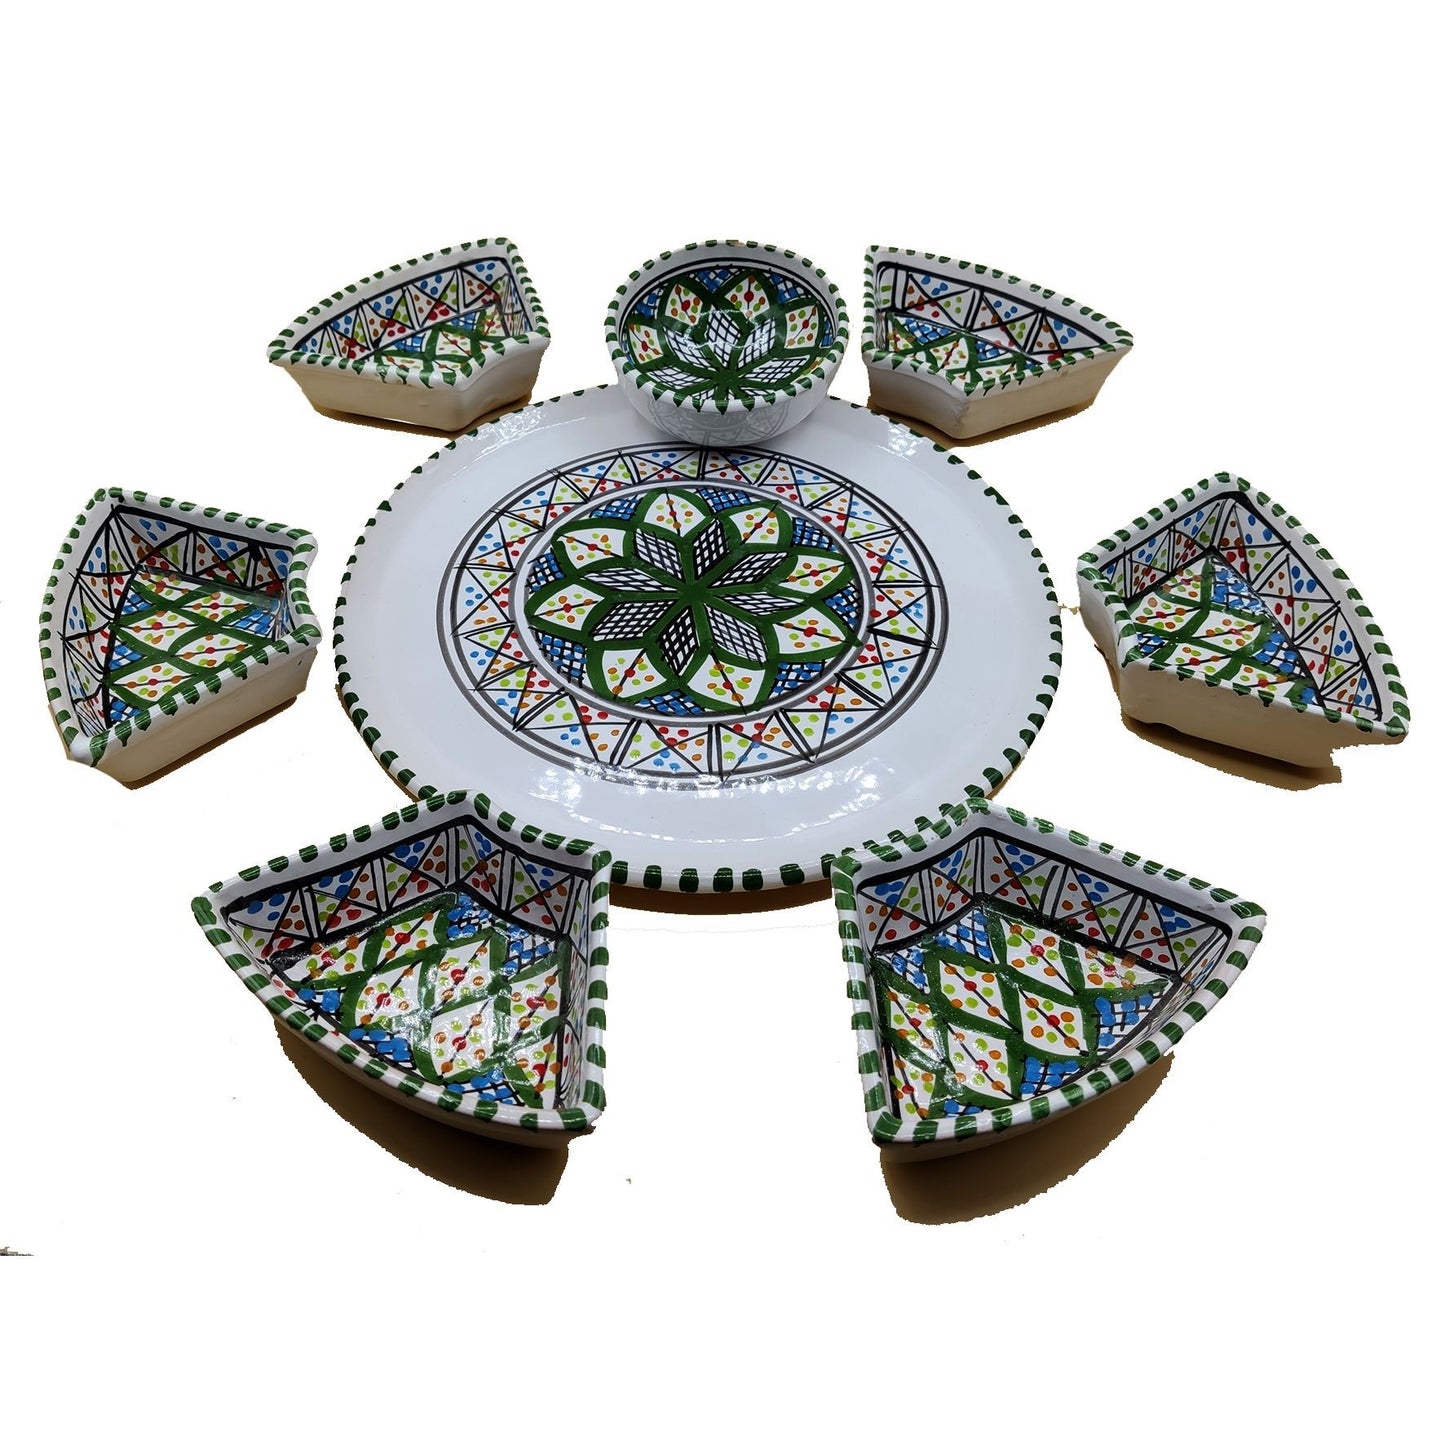 Antipastiera Piatto Etnico Ceramica Terracotta Tunisina Marocchina 2611201209